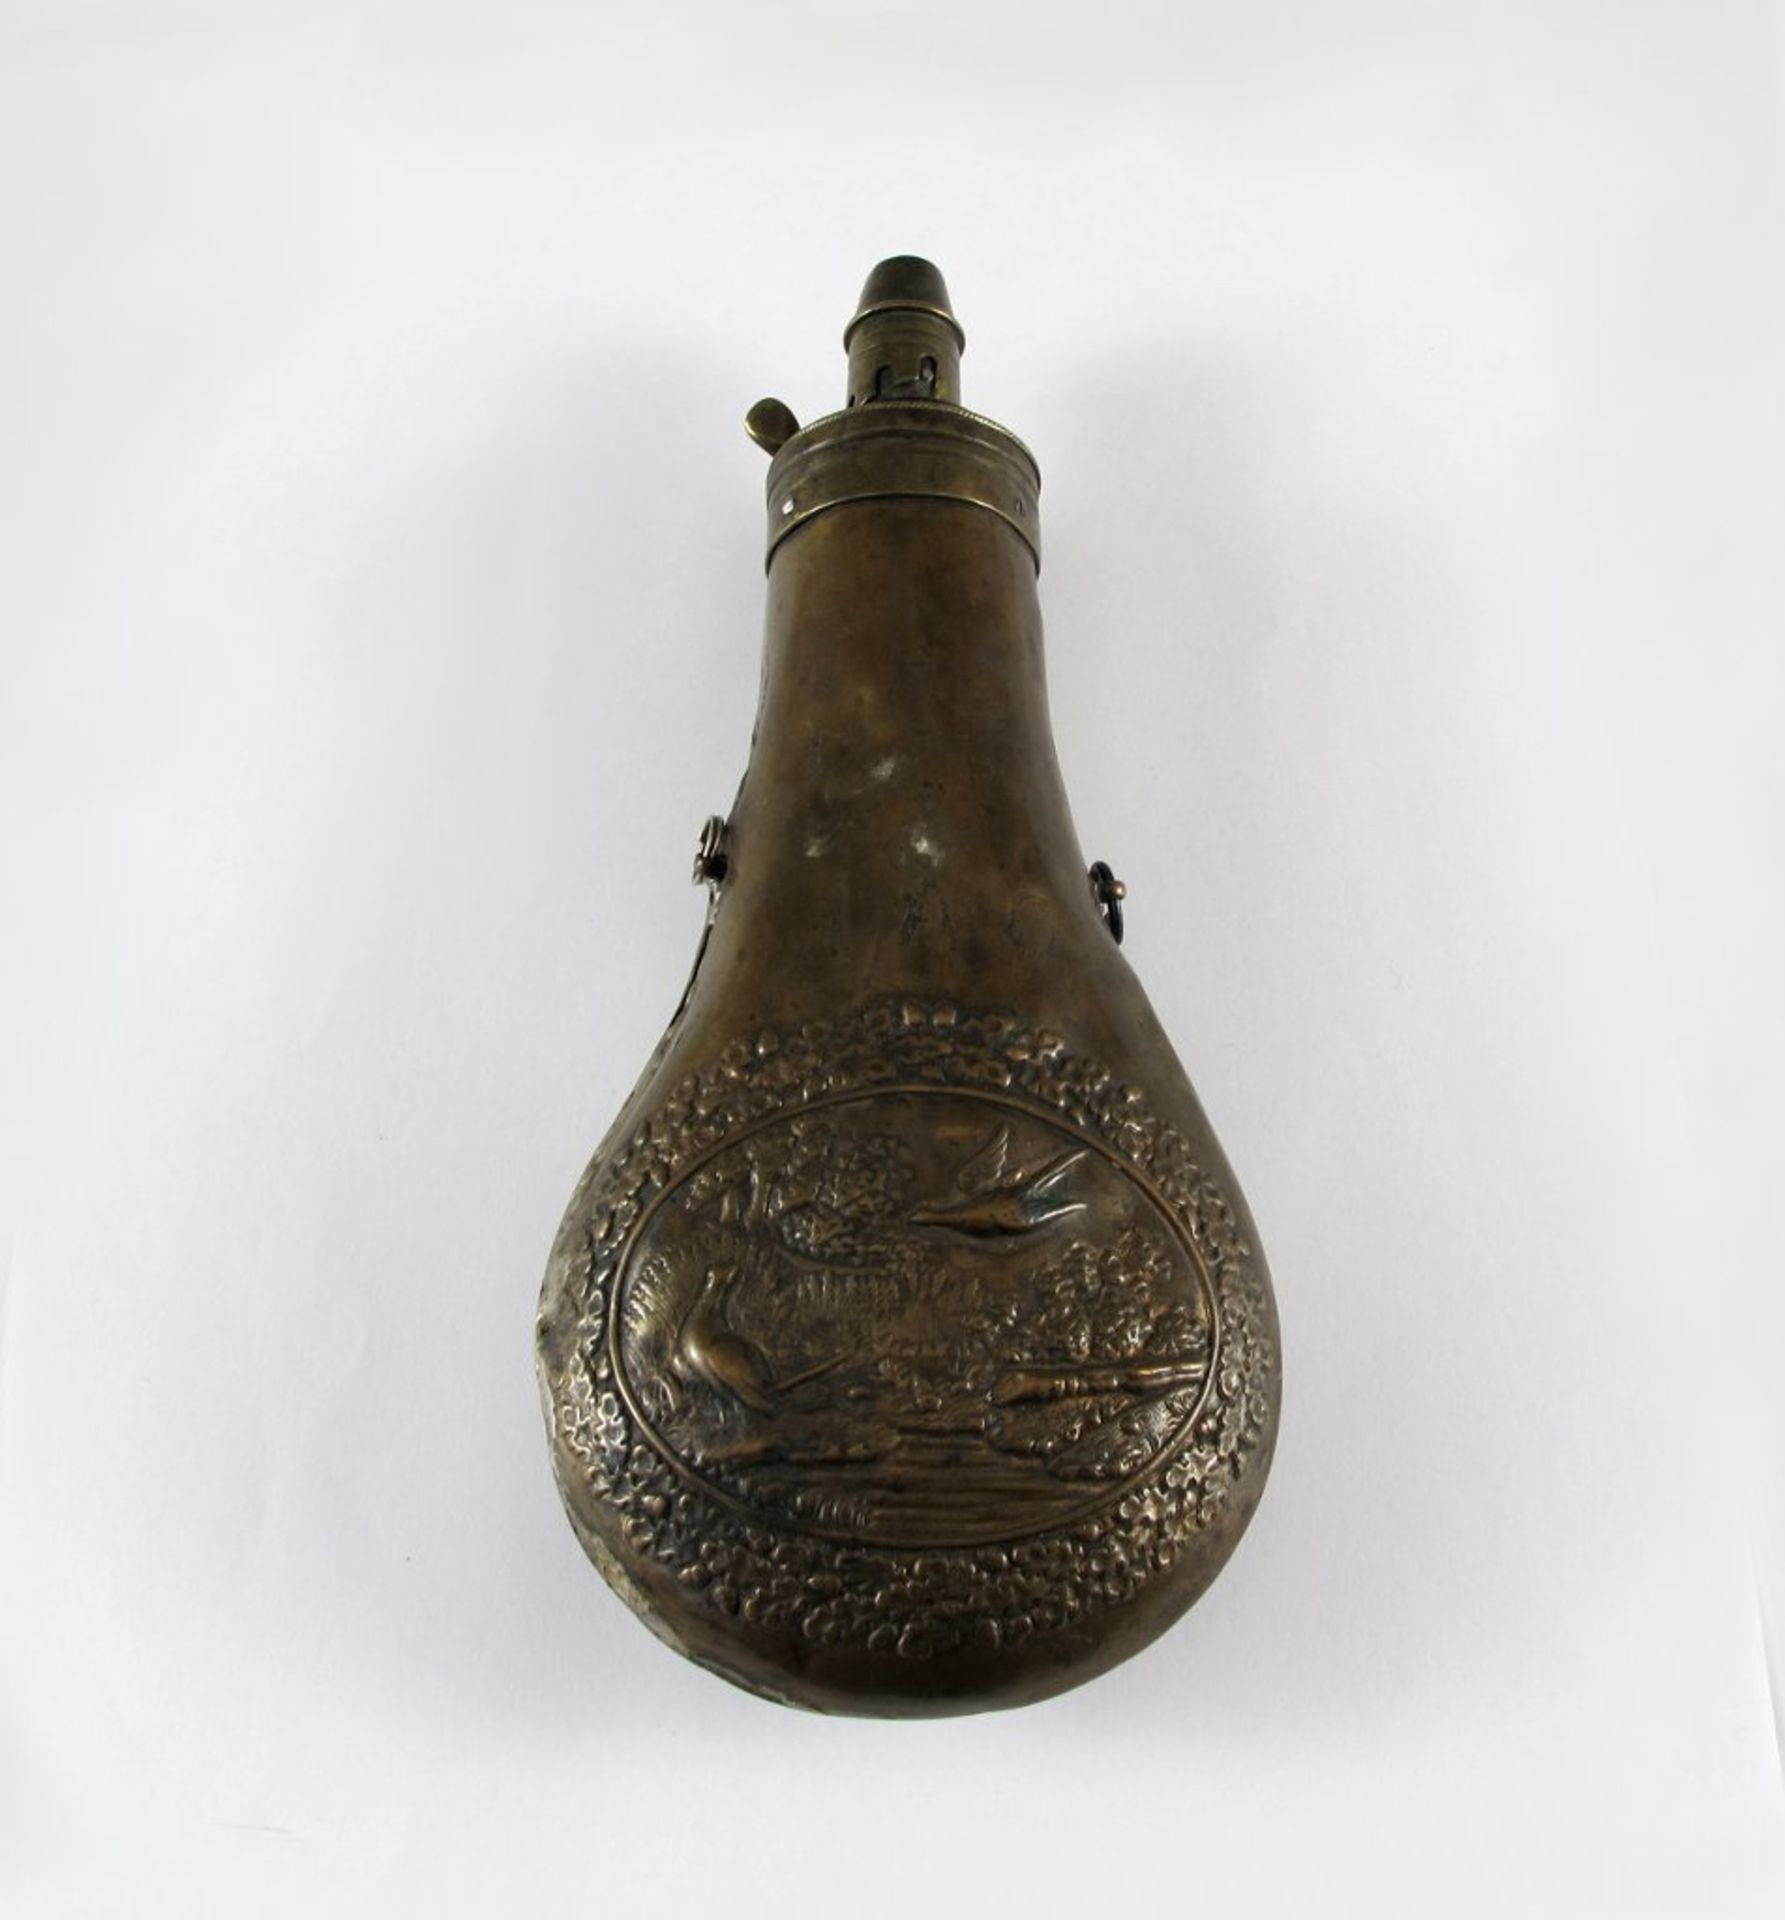 Pulverflasche. Kupfer/Messing. Reliefdekor mit Wildvögeln. 19. Jh. L 19 cm